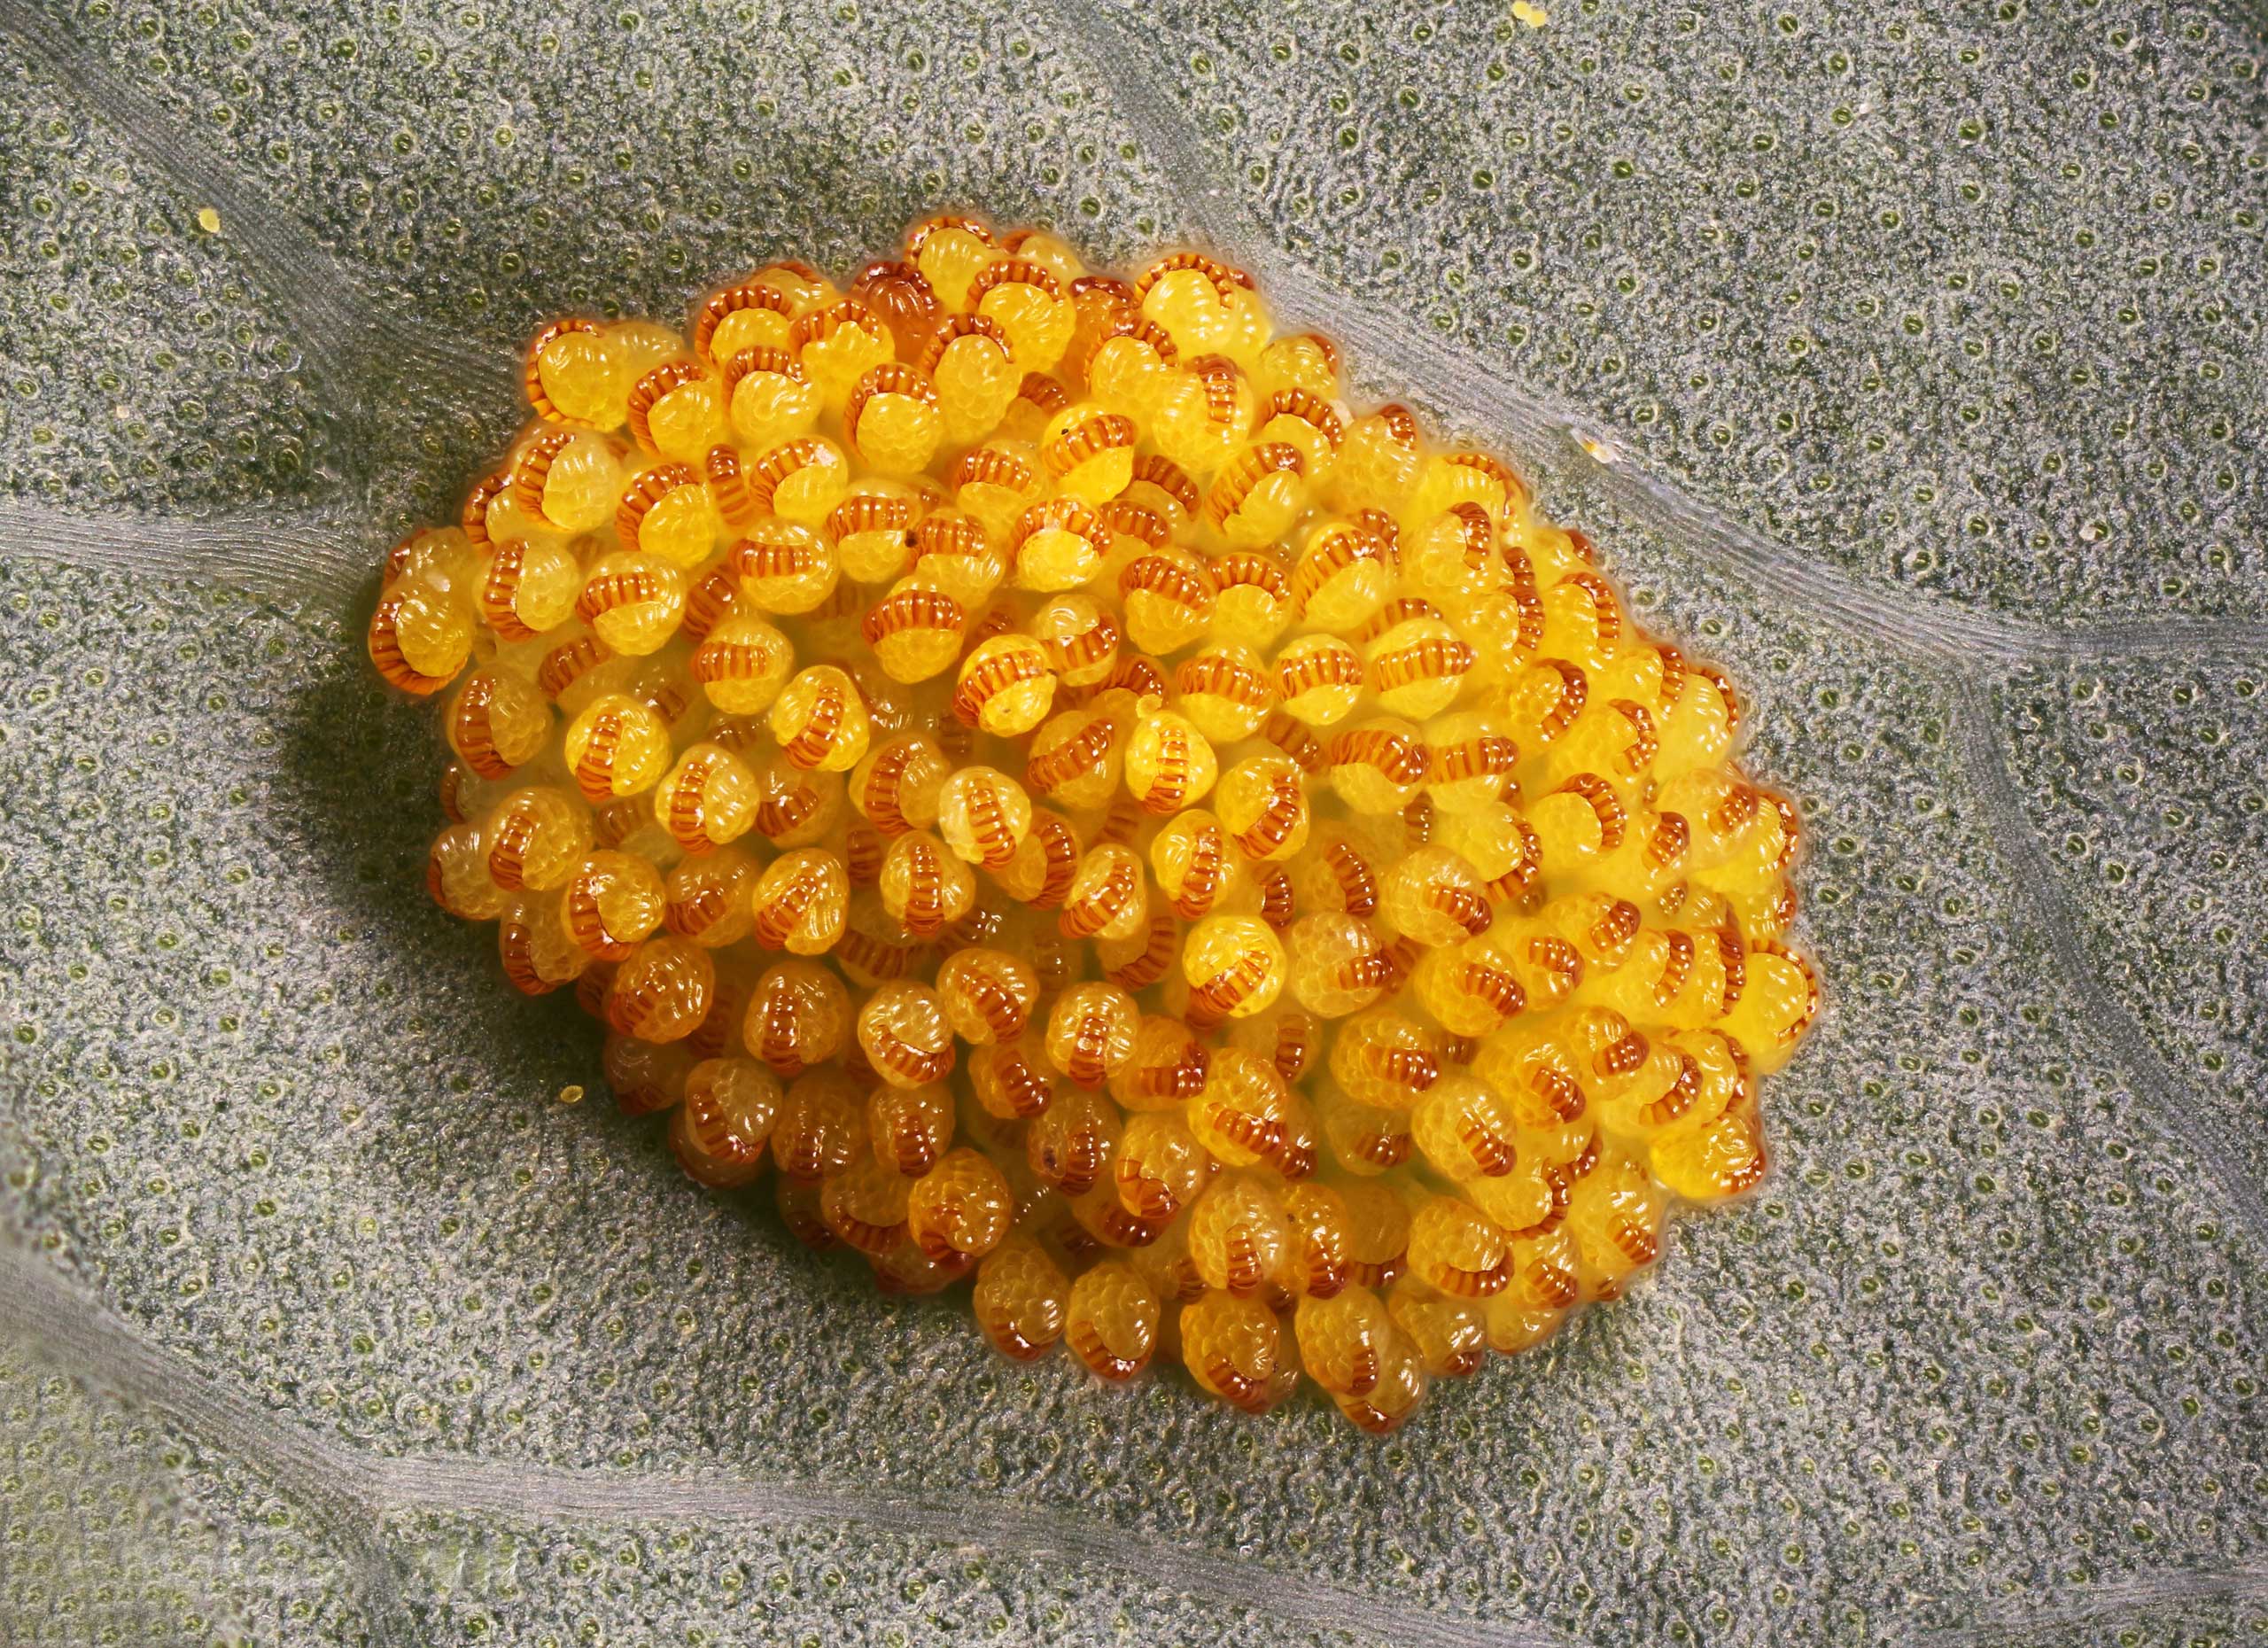 A spore cluster known as  Polypodium aureum.